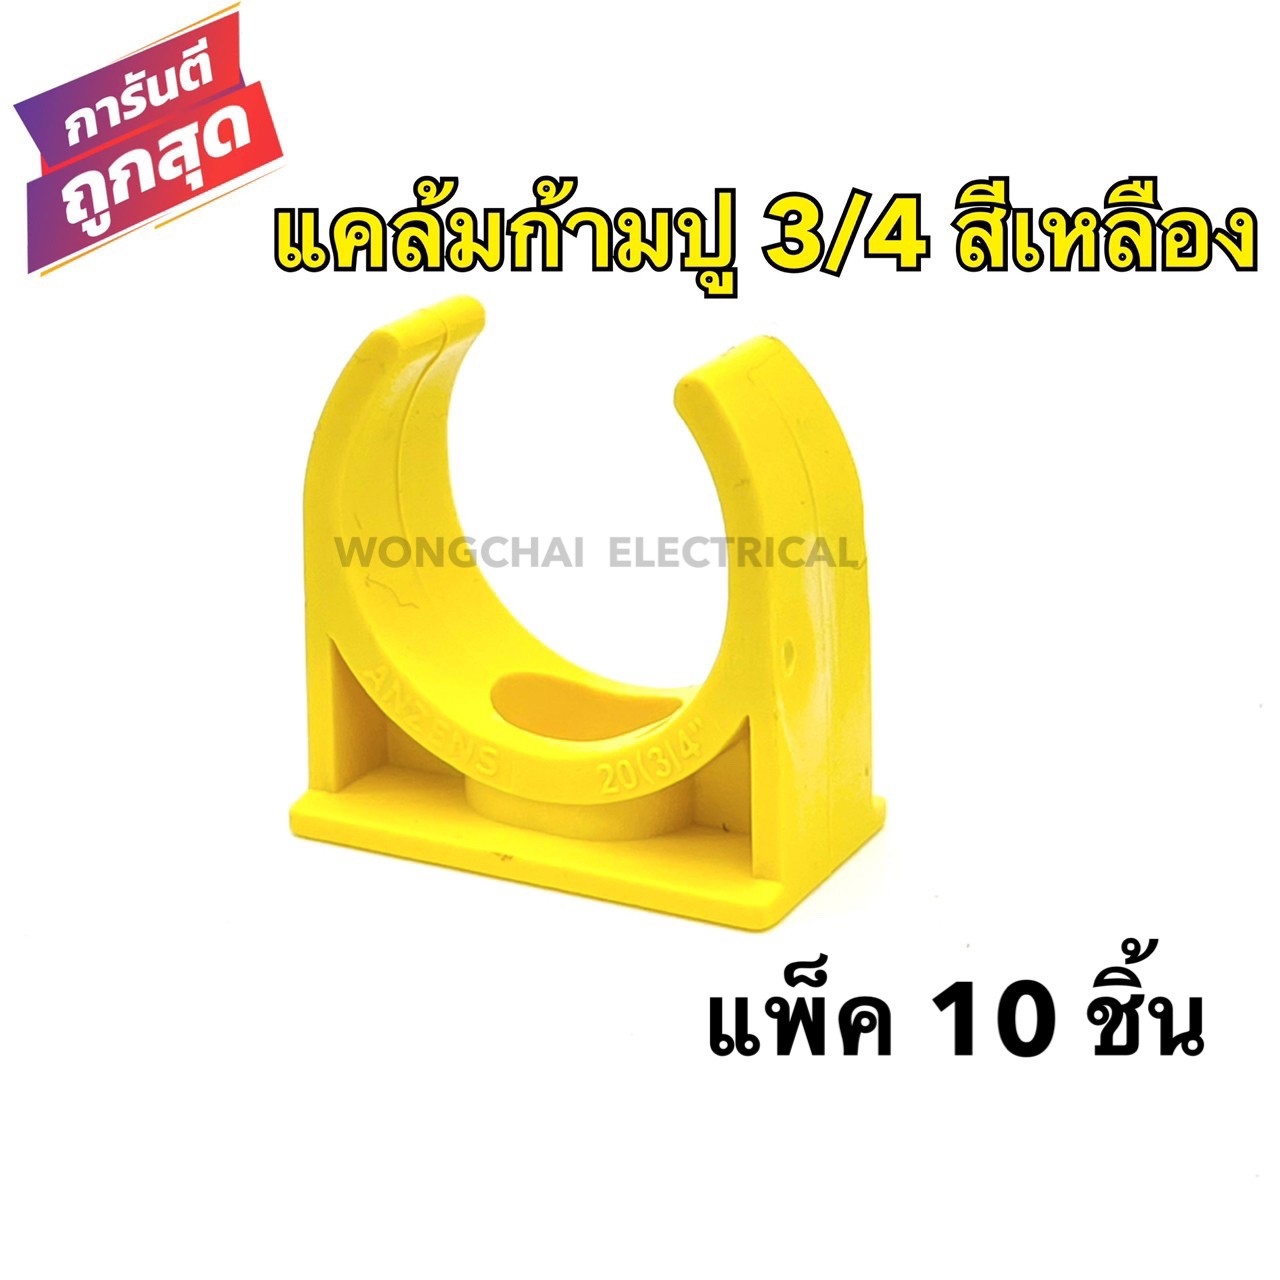 แคล้มก้ามปู 3/4 สีเหลือง คลิปก้ามปู PVC 3/4หุน สีเหลือง (แพ็ค 10 ชิ้น) แคล้มรัดท่อPVC กิ๊บจับท่อ